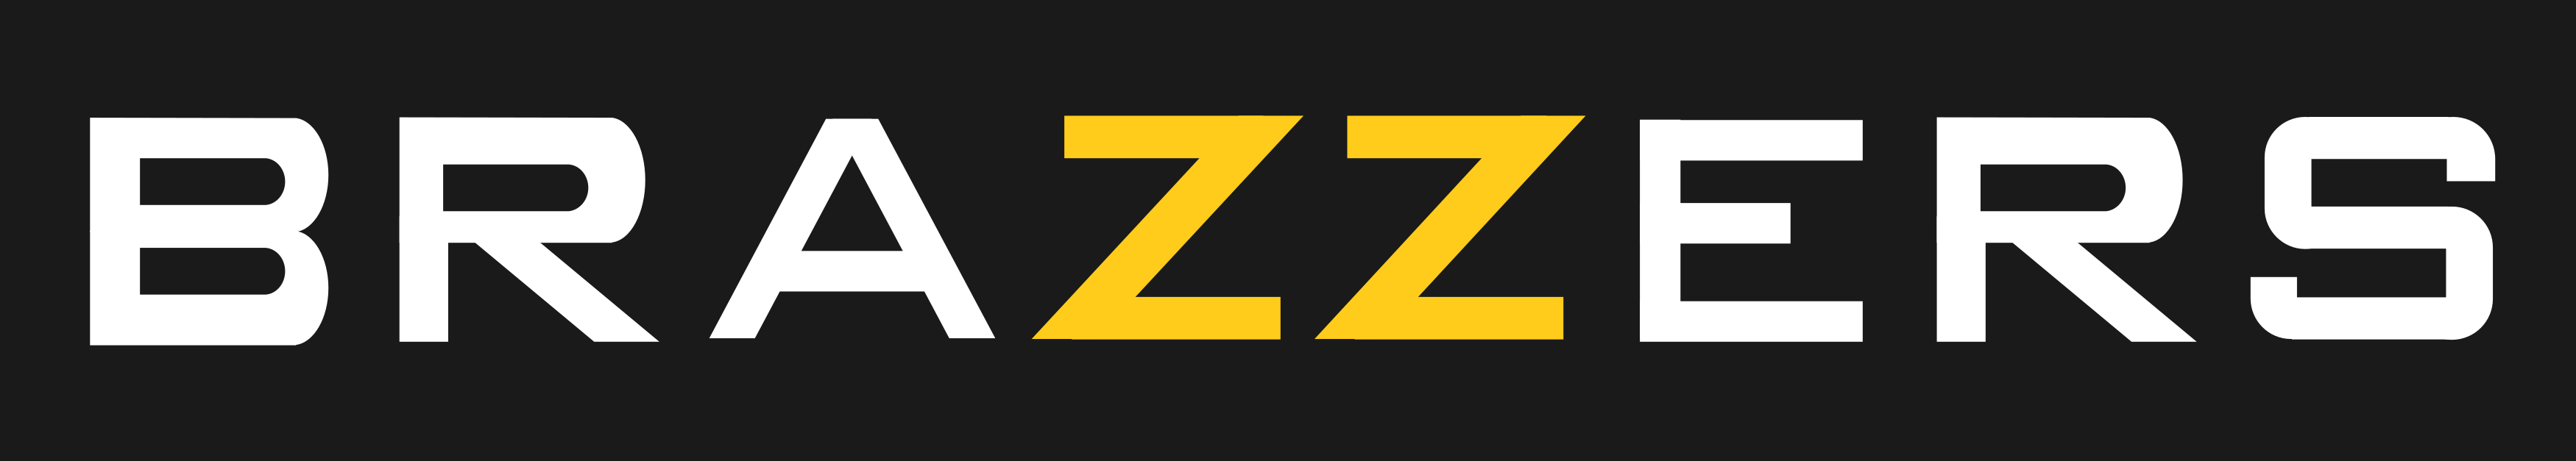 Brazzos Logo - LogoDix 